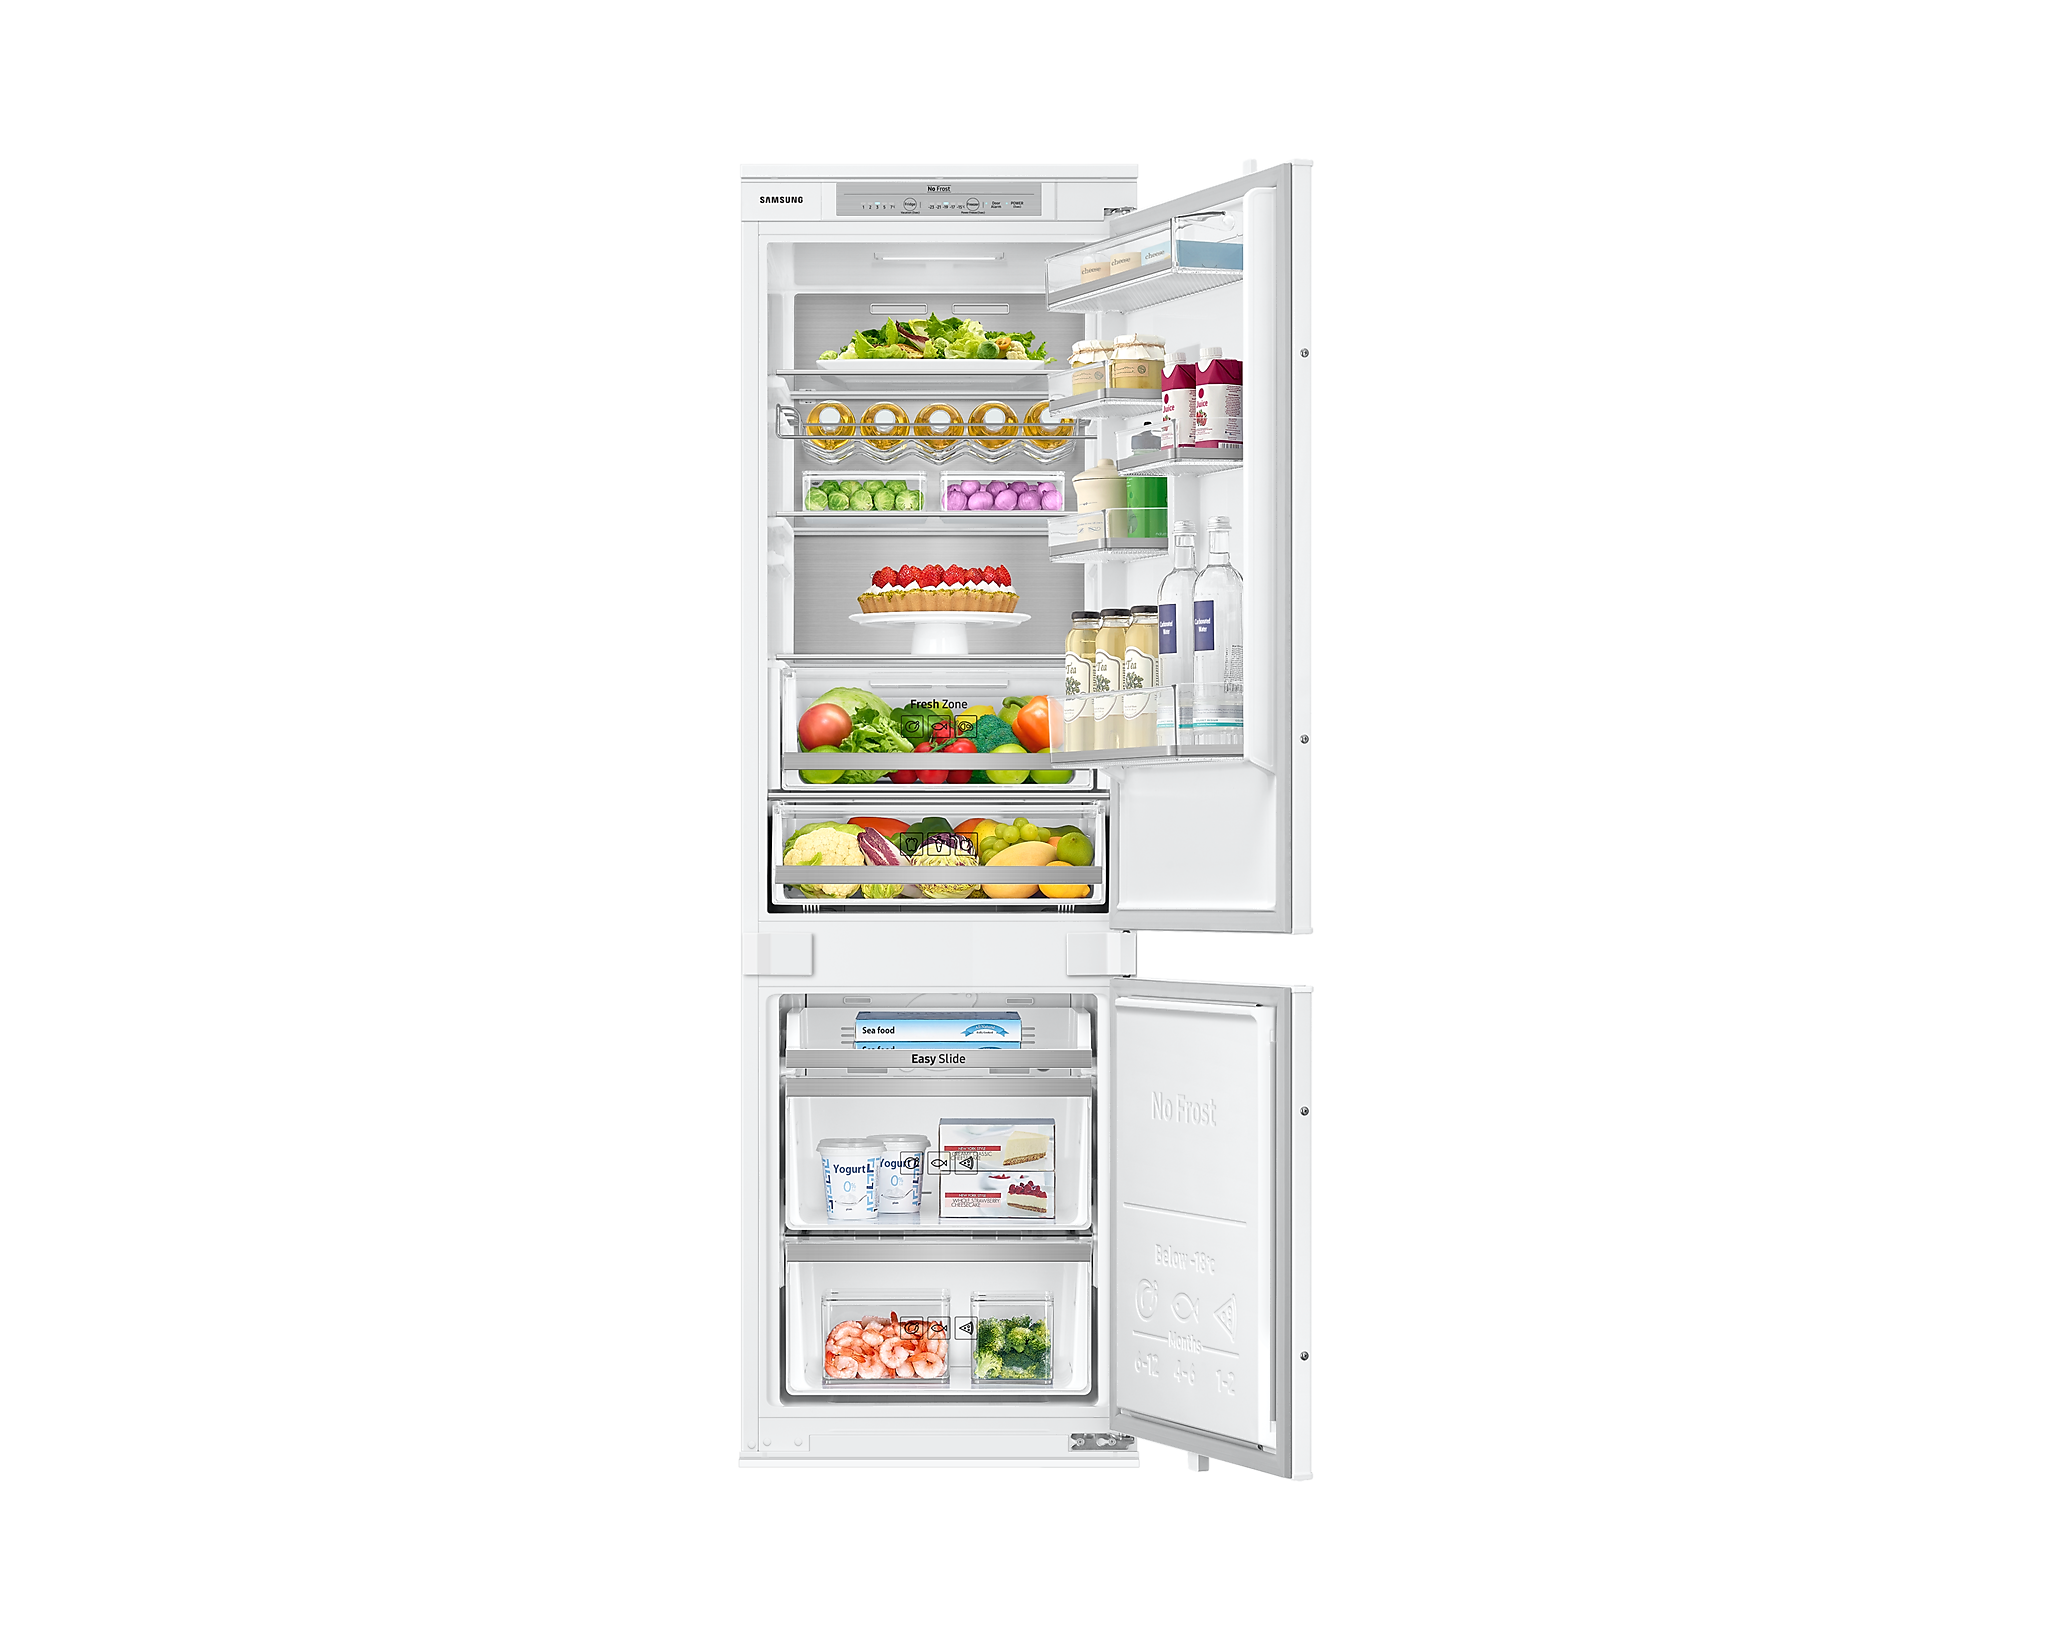 Холодильник Samsung brb267050ww/WT. Beko bcna306e2s. Встраиваемый холодильник Zanussi ZBB 928465 S. Холодильник БЕКО встраиваемый 193 см. Встраиваемый холодильник beko bcna275e2s